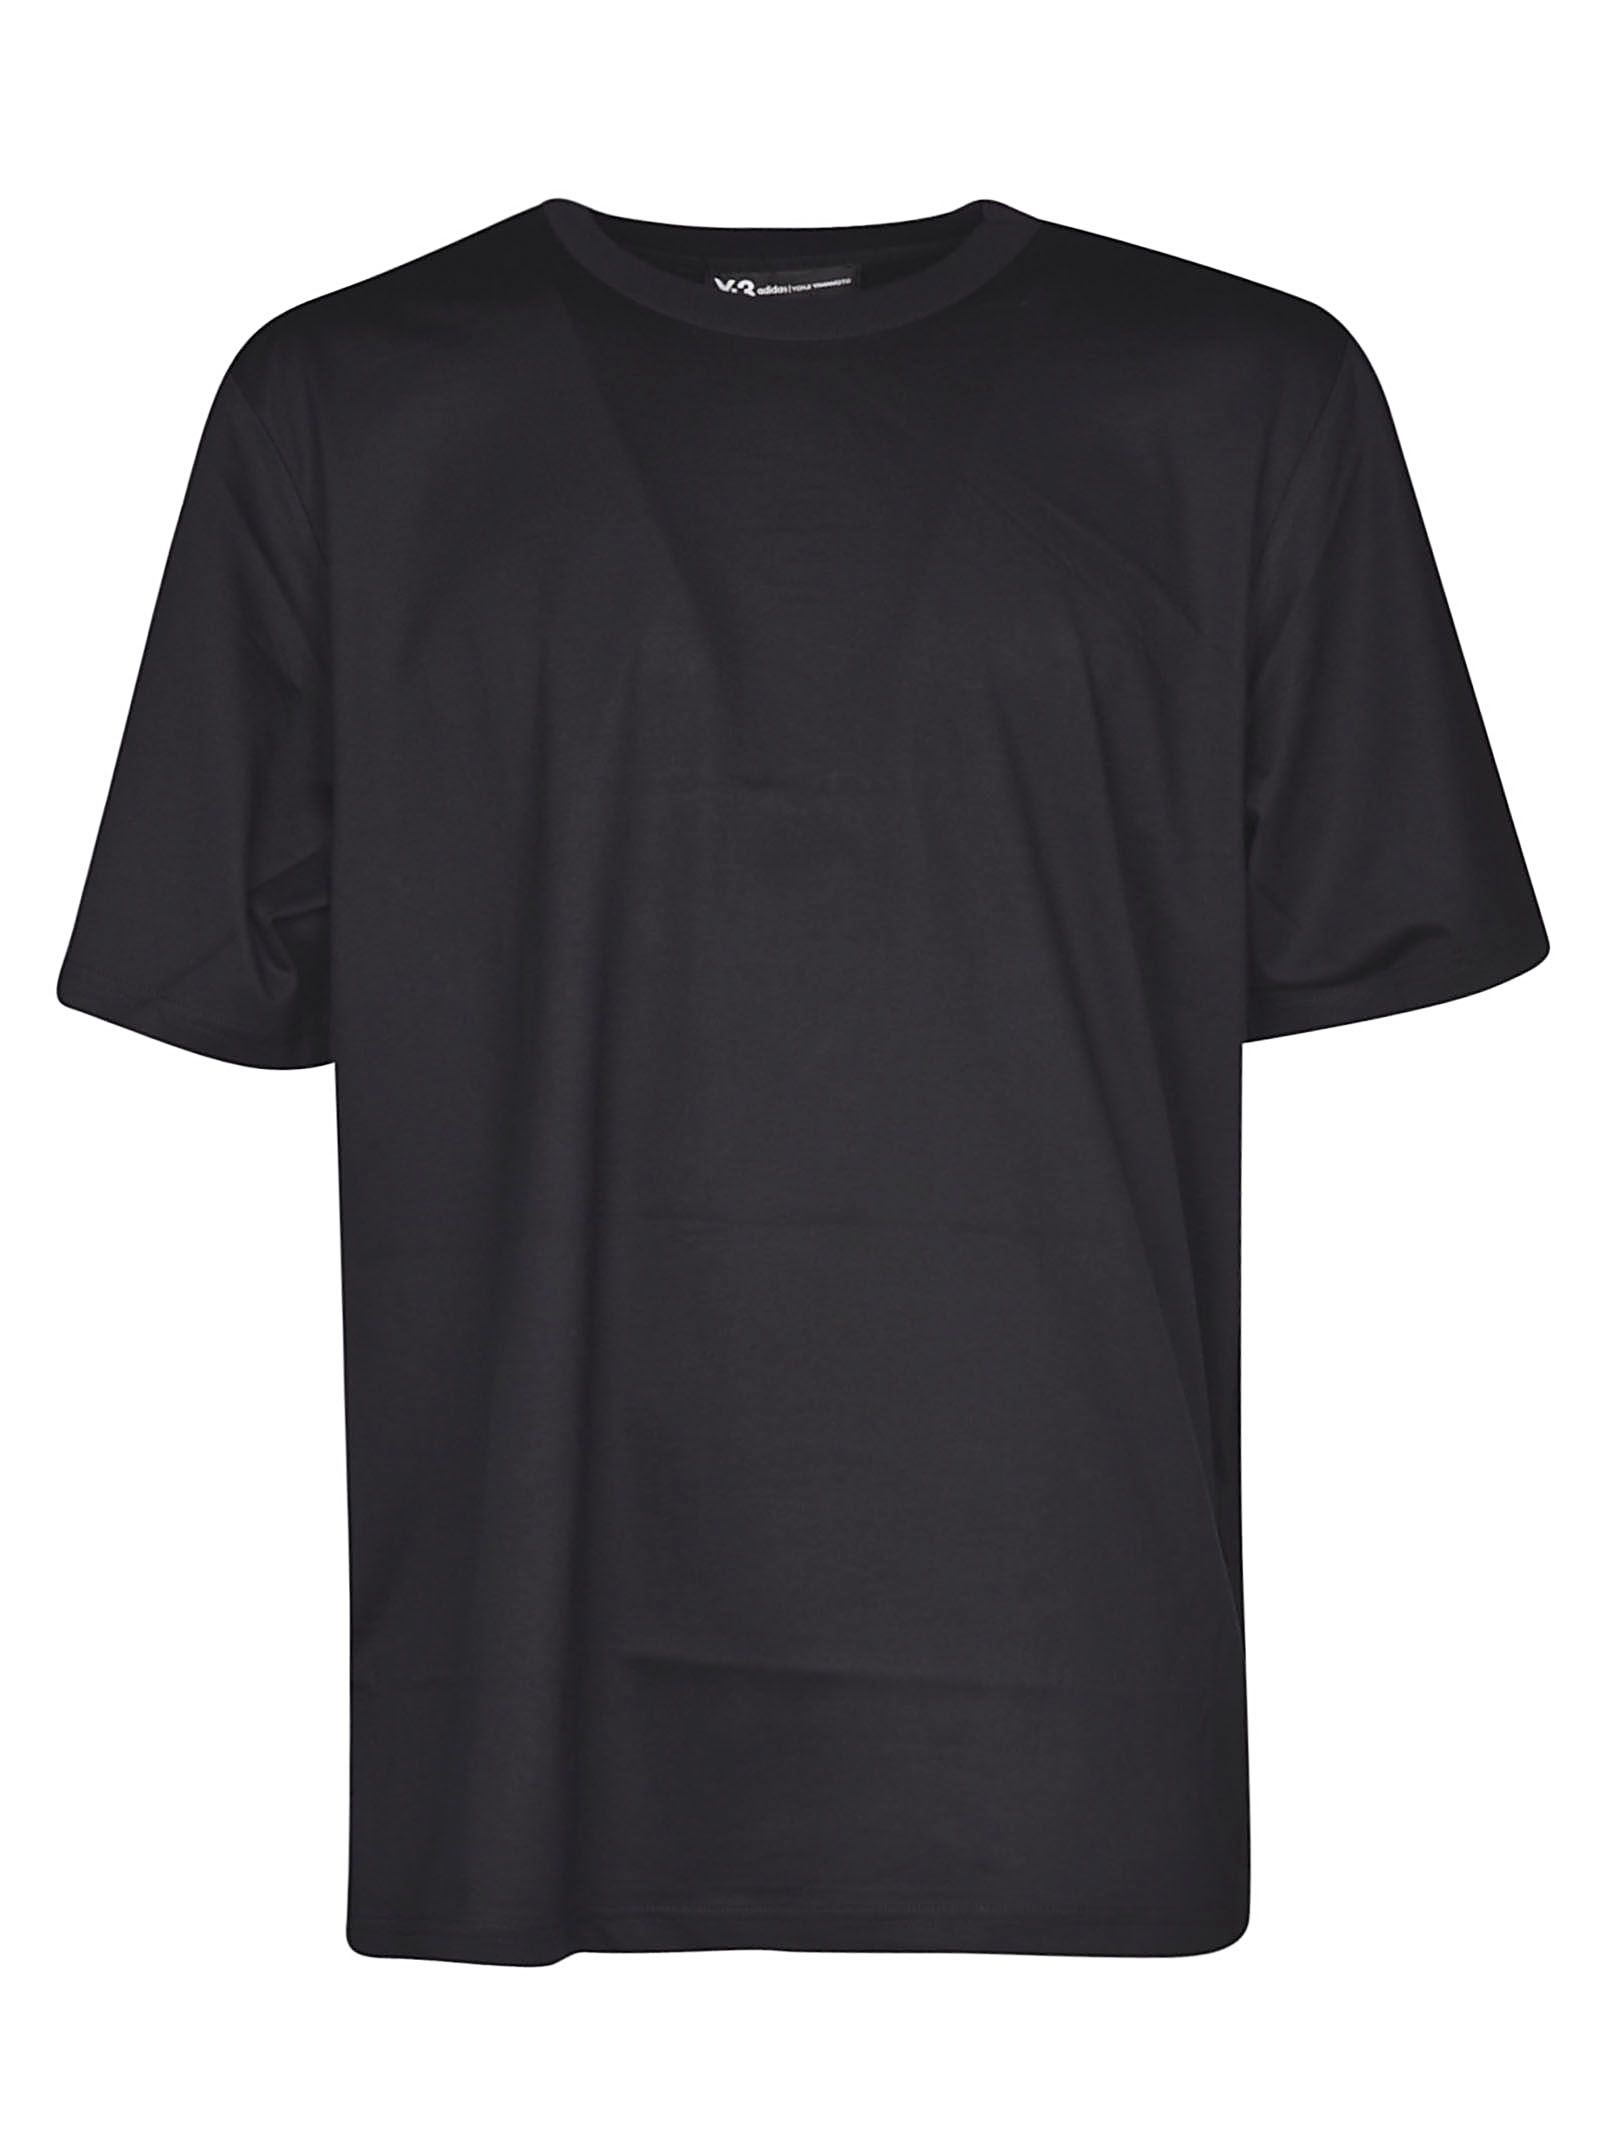 Y-3 Skull Logo T-shirt In Black | ModeSens